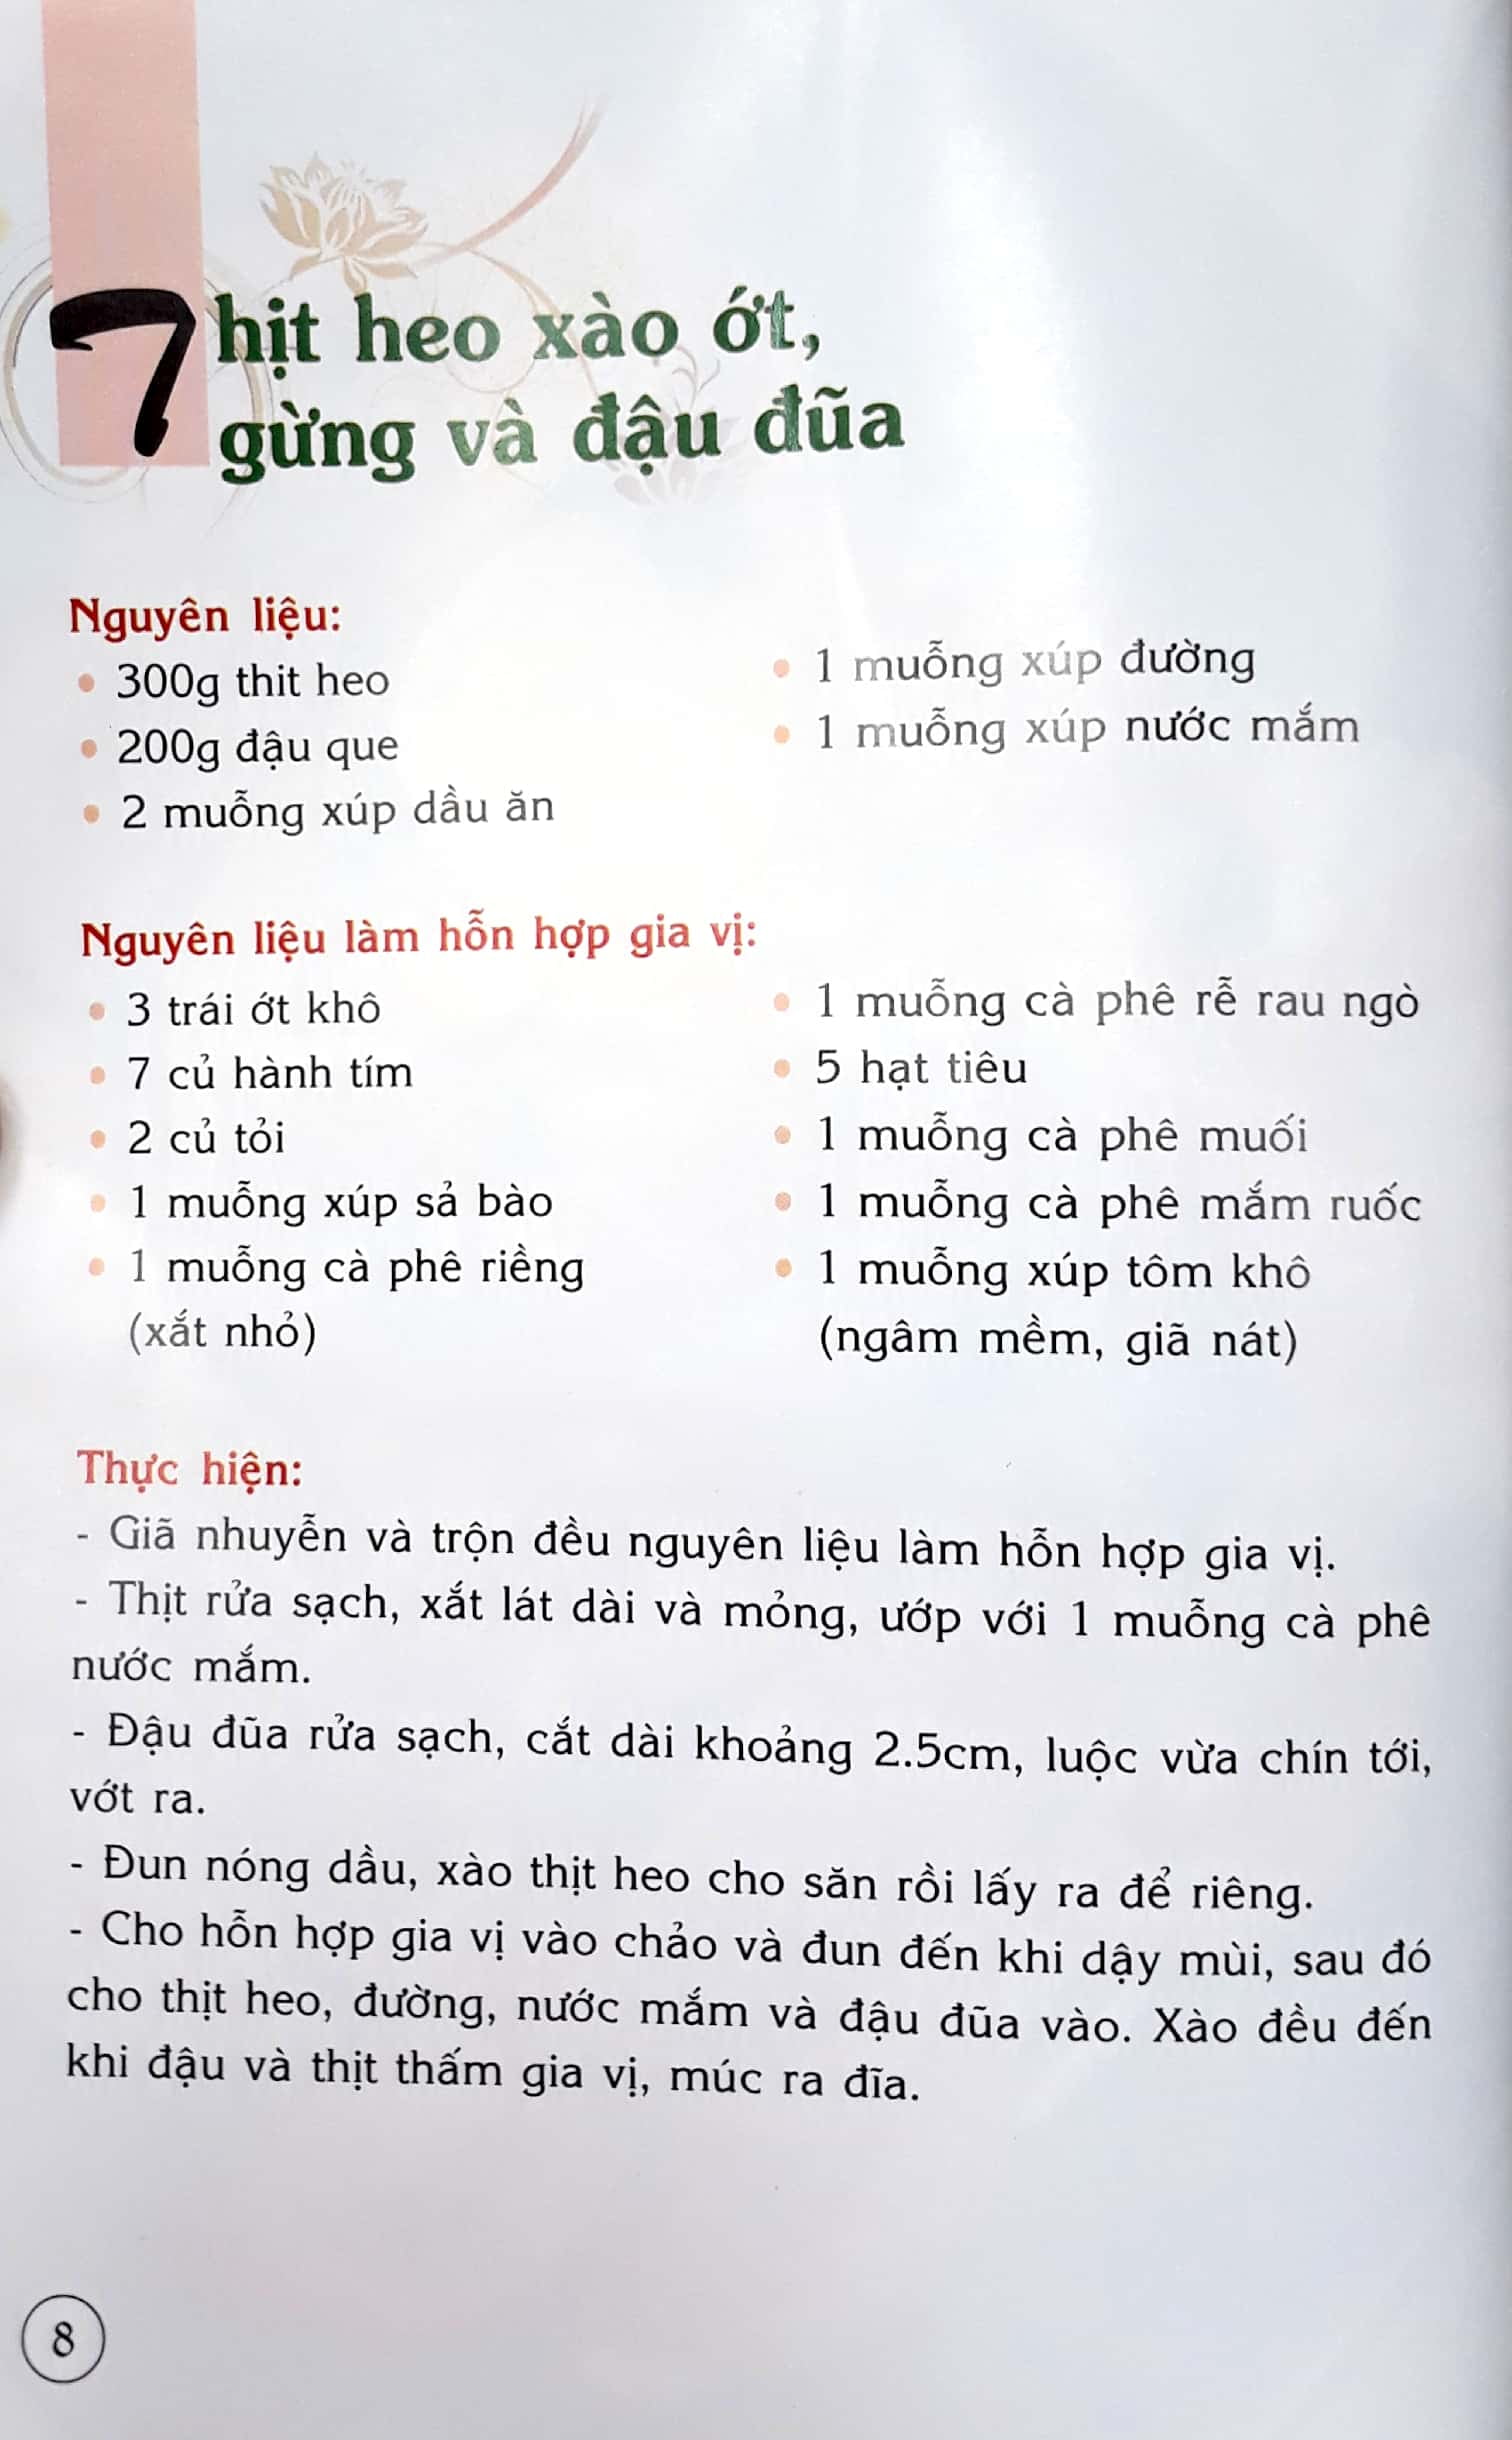 30 Món Thái Đặc Sắc PDF